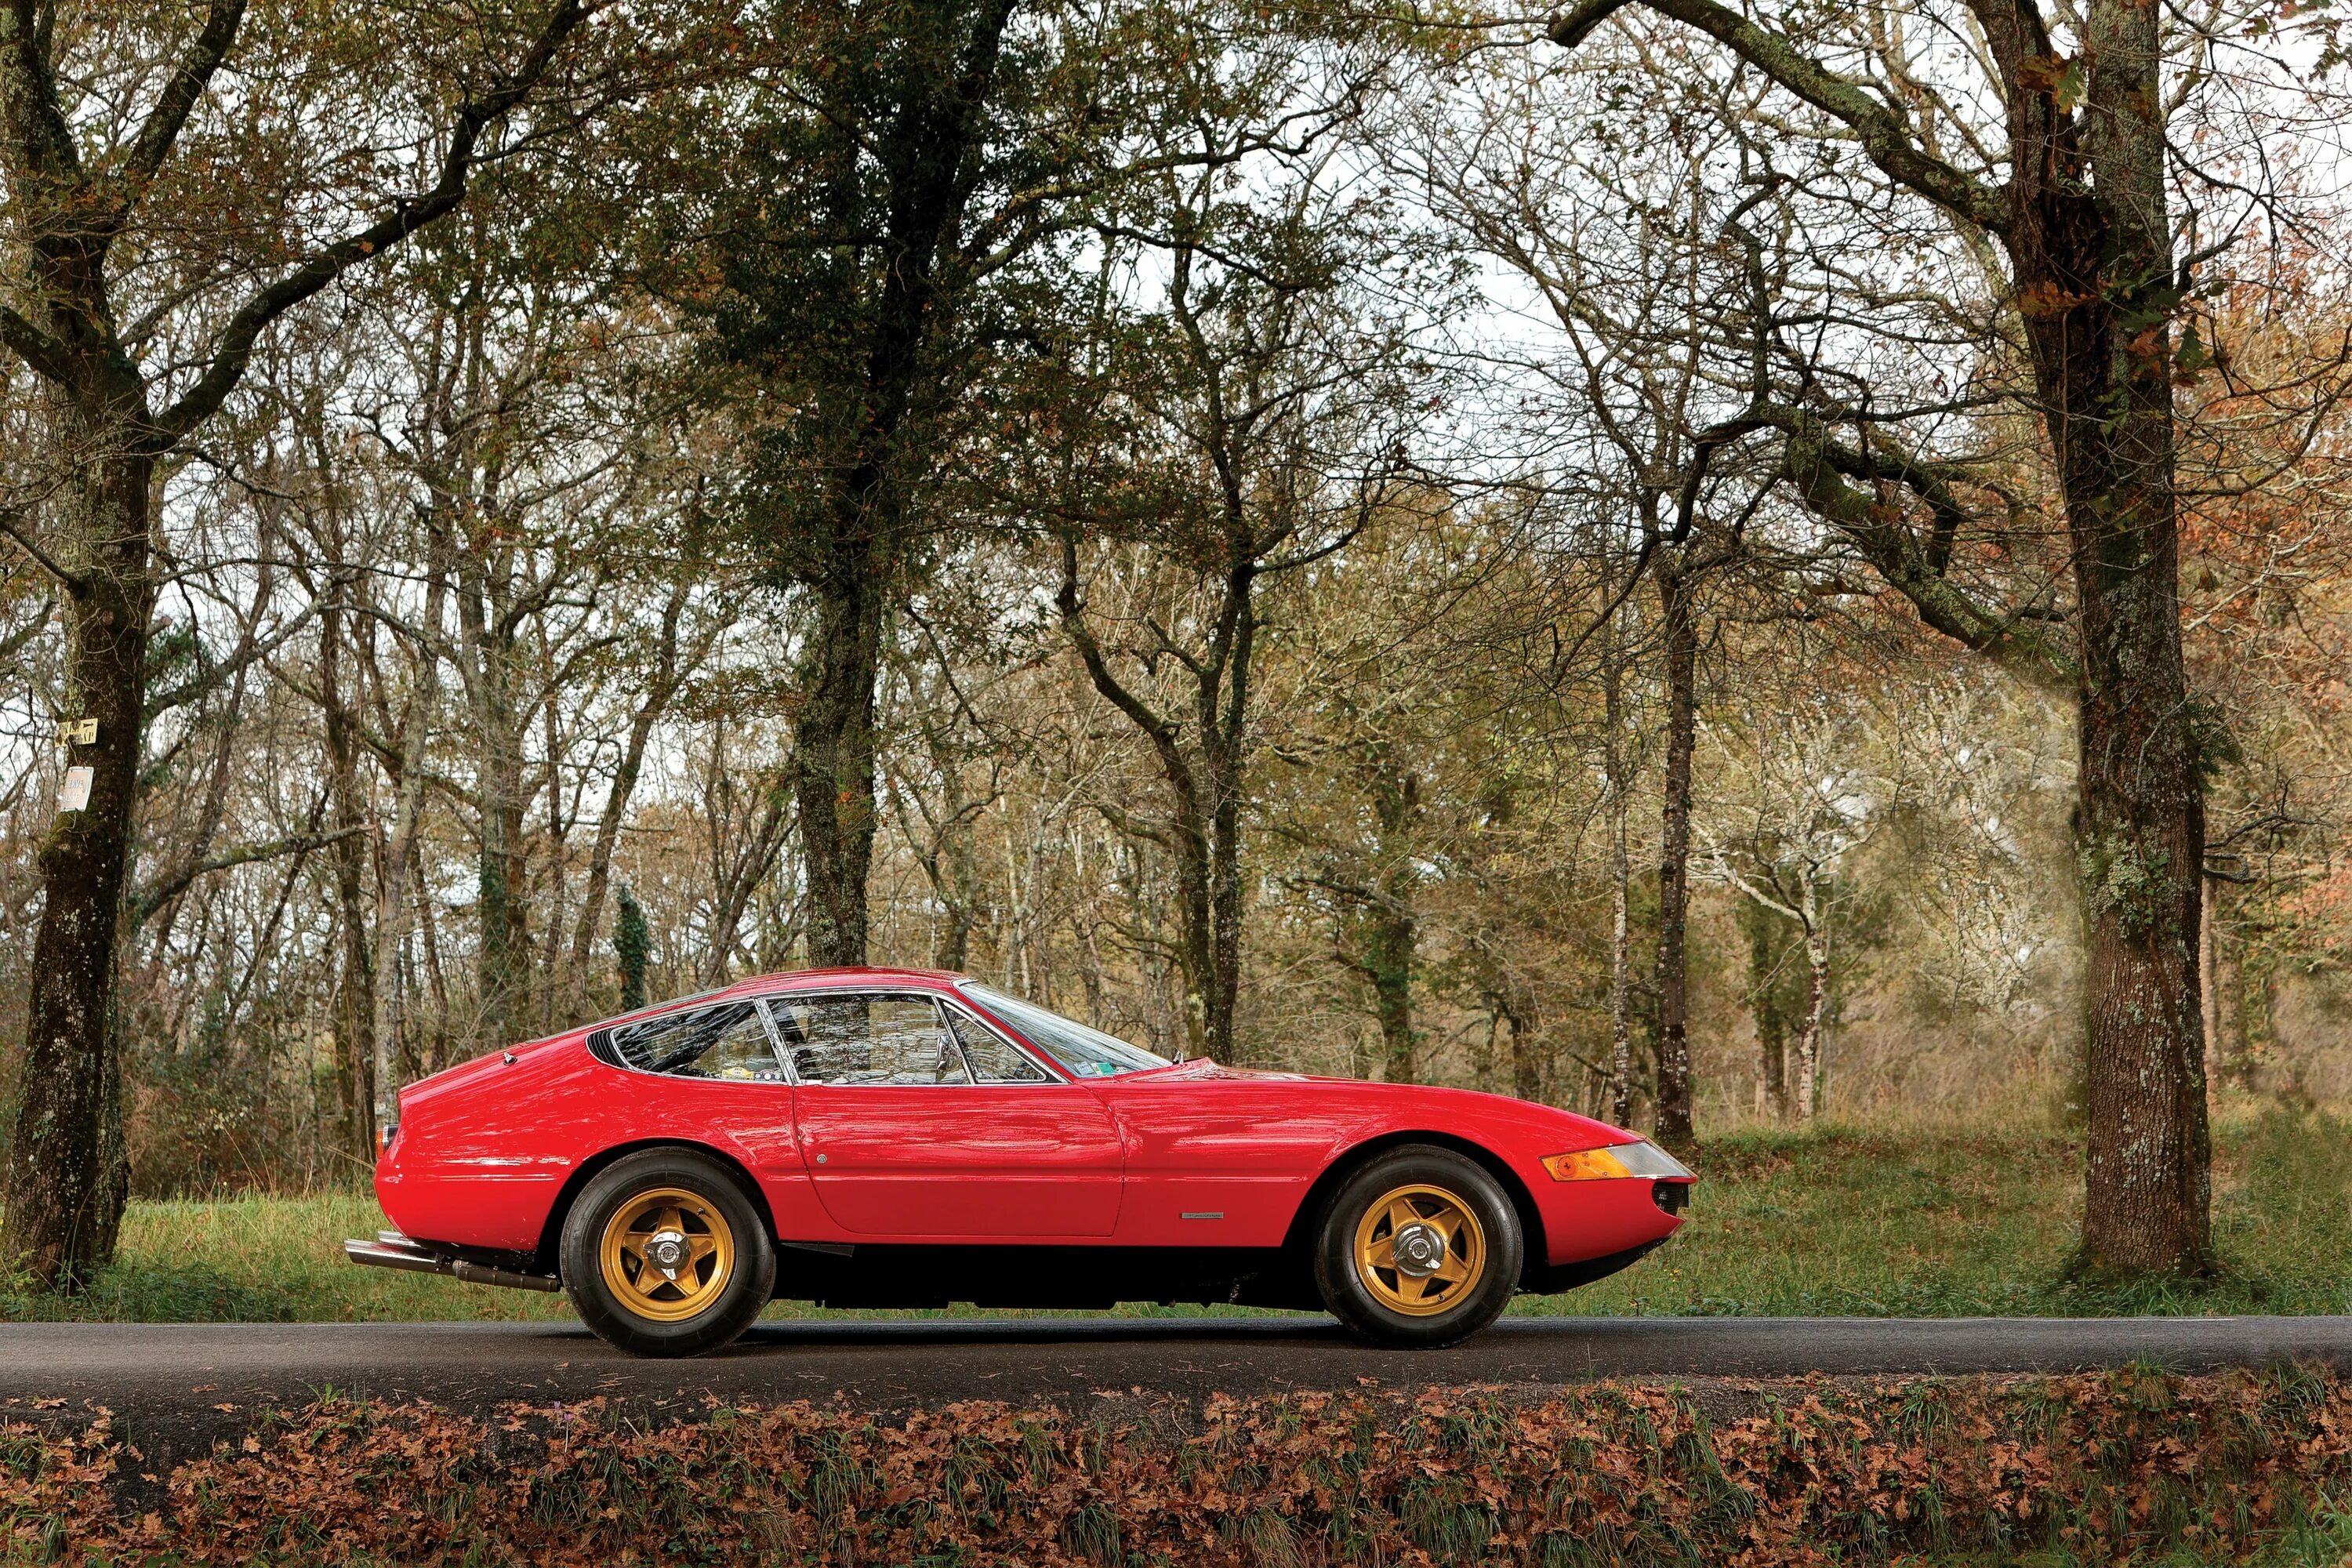 Ferrari group. Ferrari 365 GTB/4. Ferrari 365gtb4 Daytona 1969. Феррари 365 GTB/4 Daytona. 1969 Ferrari 365.